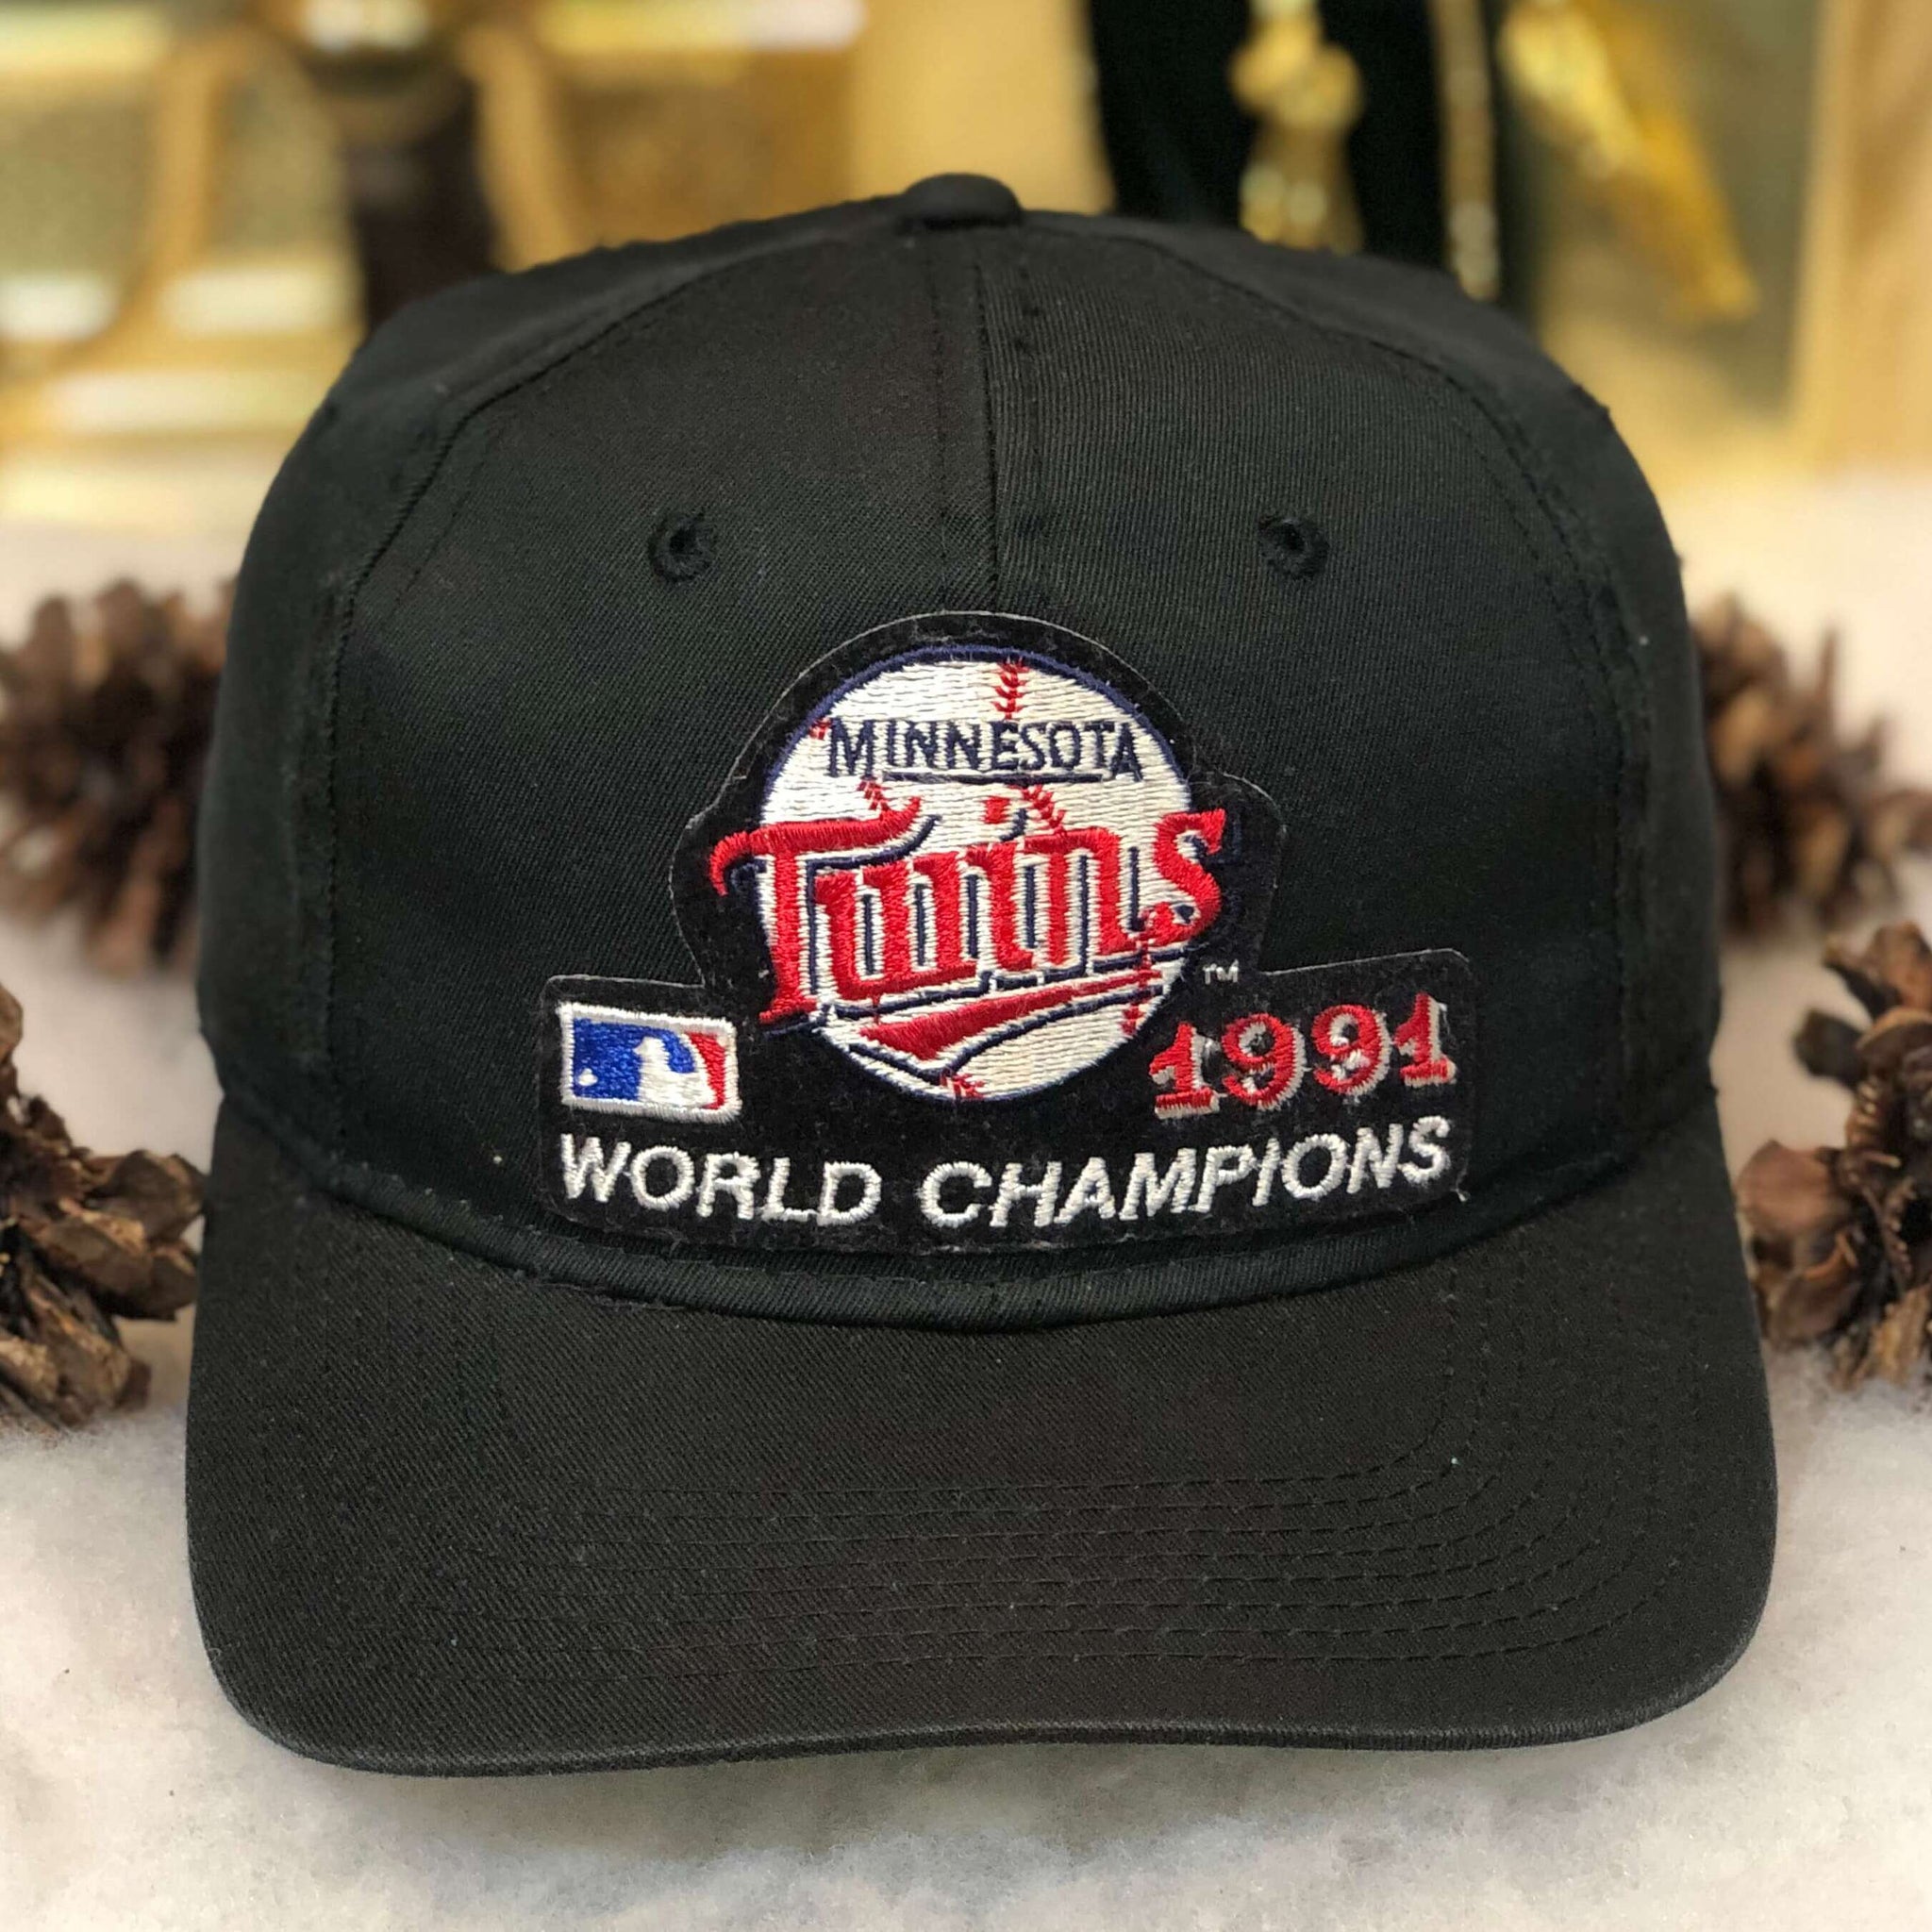 Vintage MLB Minnesota Twins 1991 World Champions Sports Specialties Twill Snapback Hat